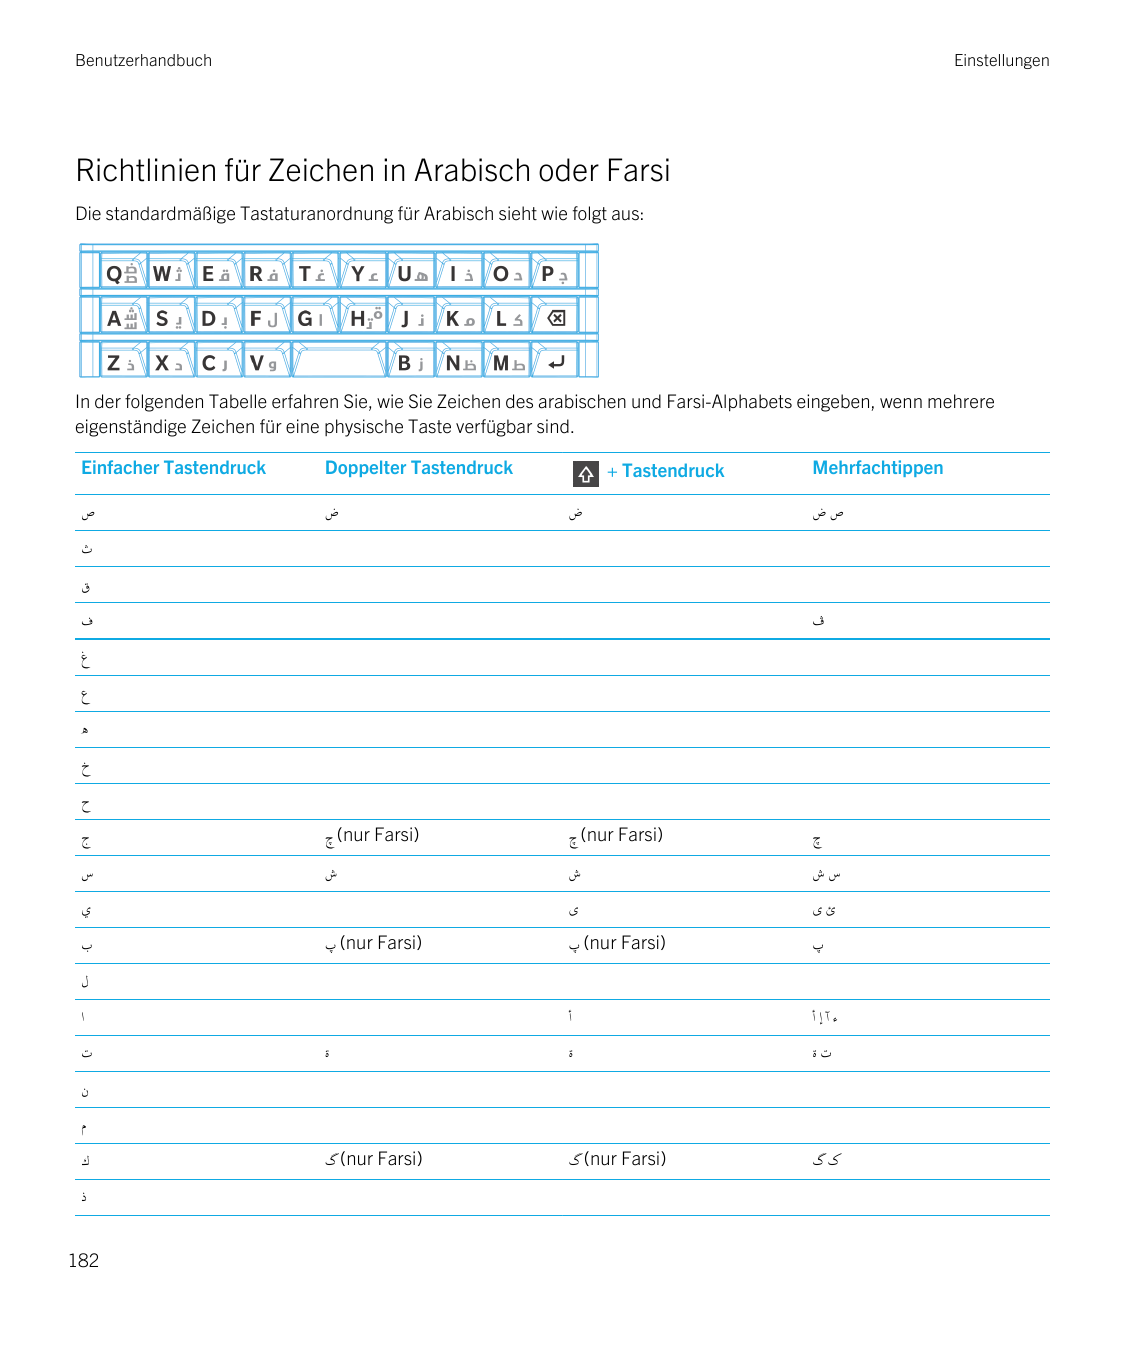 BenutzerhandbuchEinstellungenRichtlinien für Zeichen in Arabisch oder FarsiDie standardmäßige Tastaturanordnung für Arabisch sie